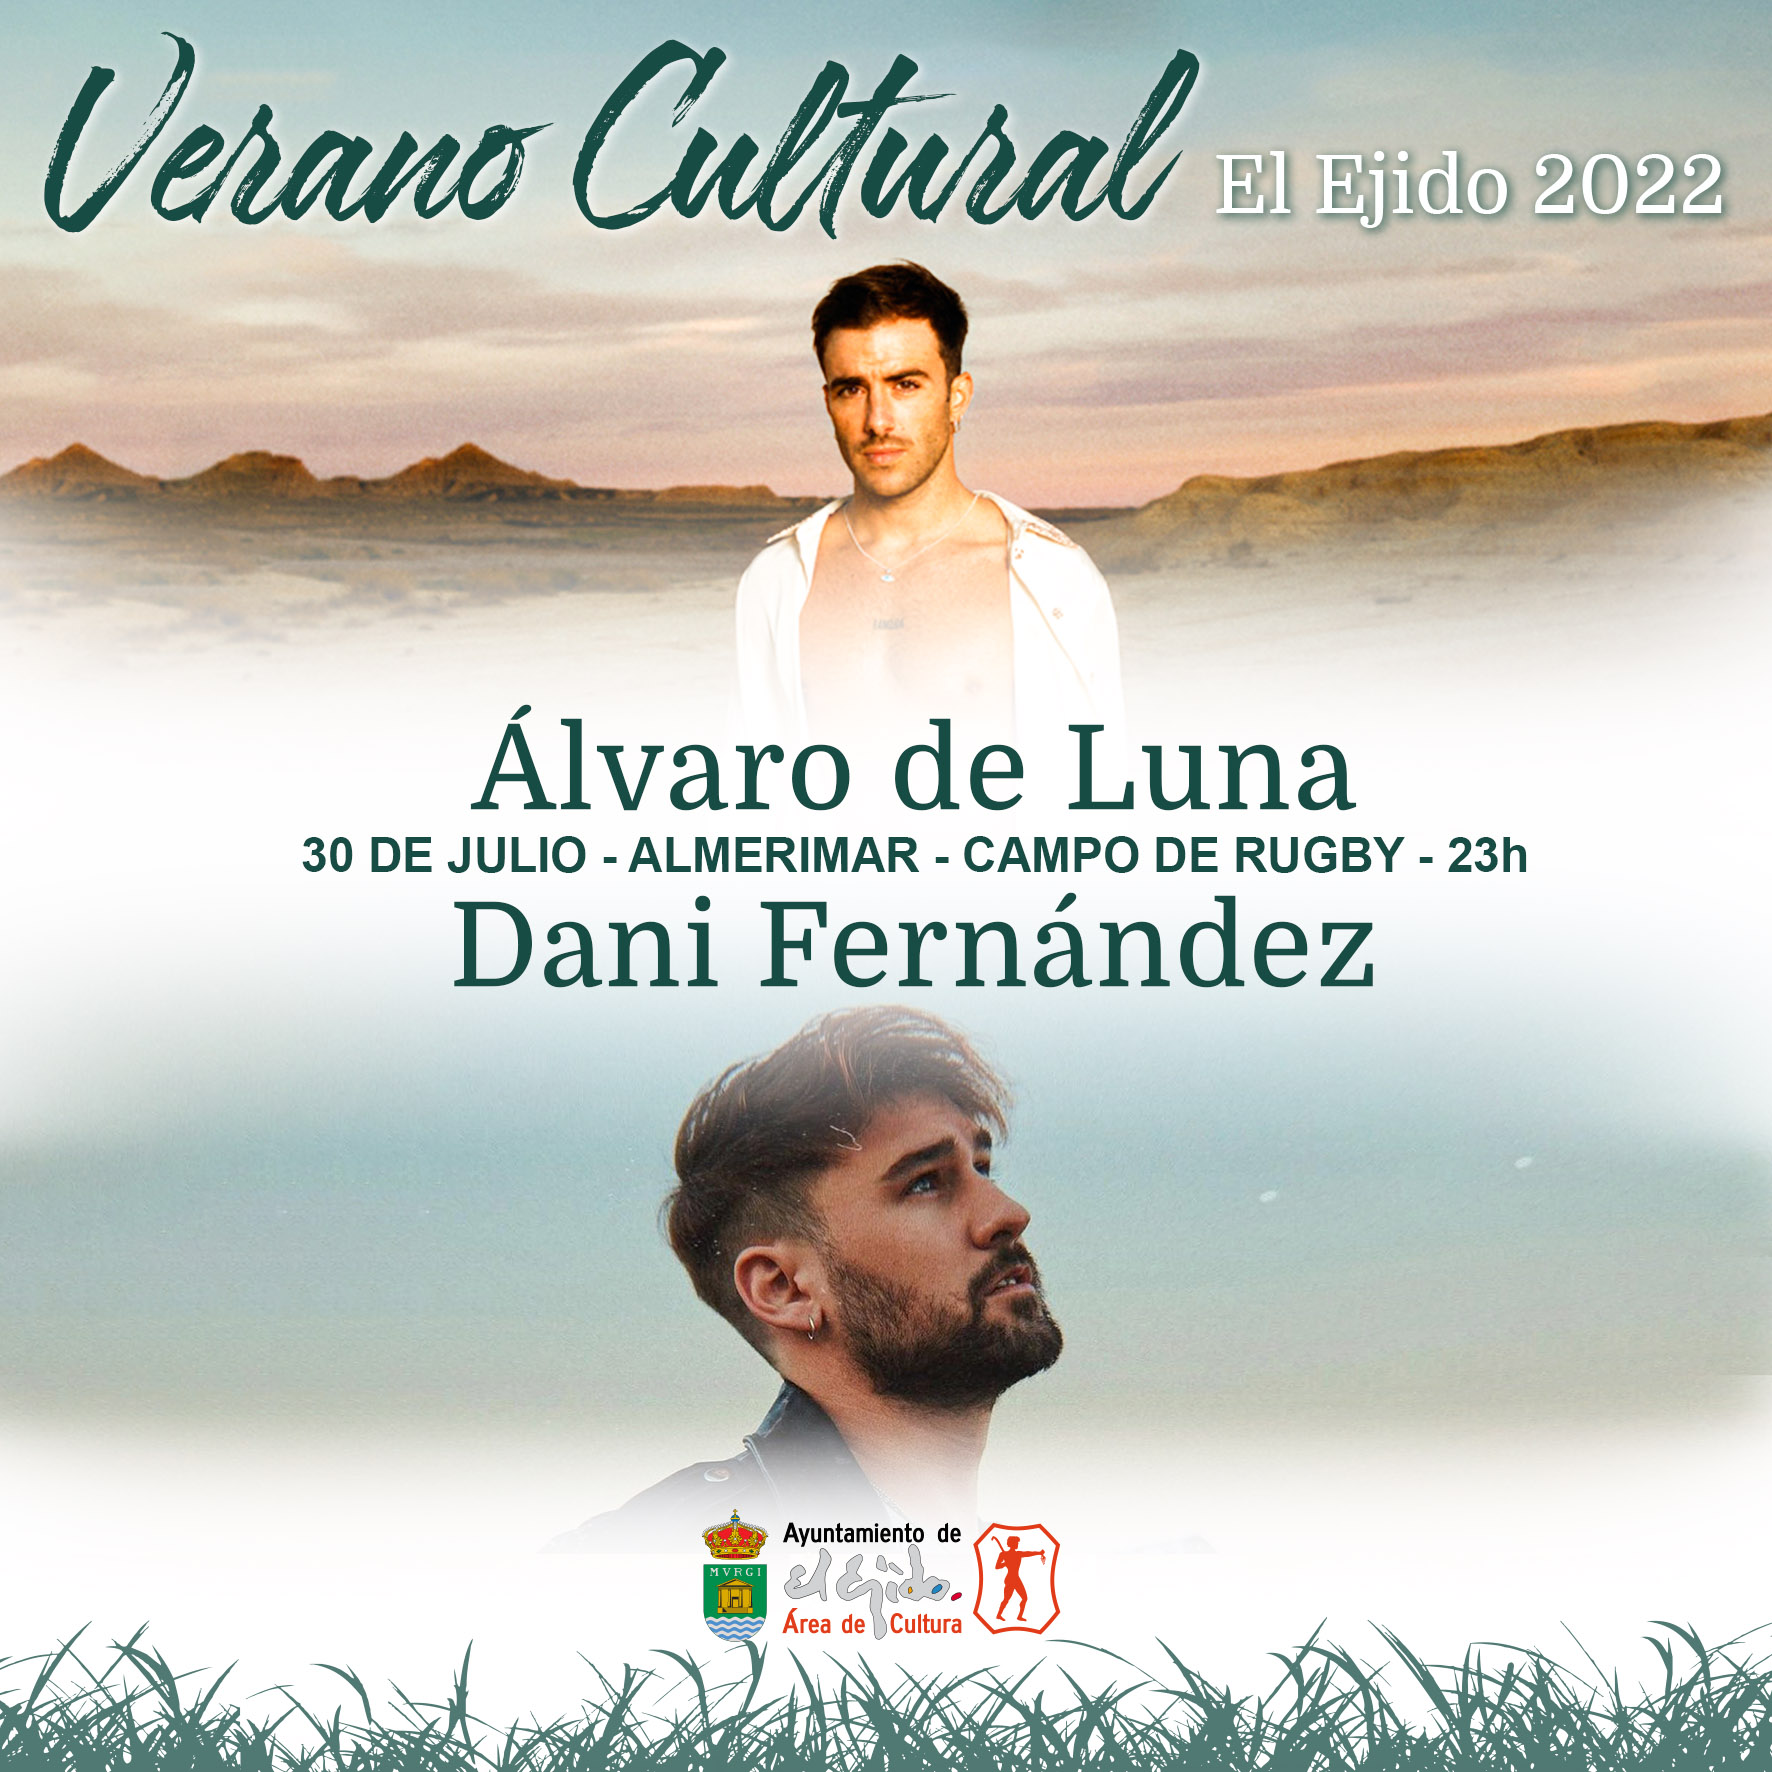 Avance de programación del Verano Cultural 2022 de El Ejido – Álvaro de Luna y Dani Fernández en concierto